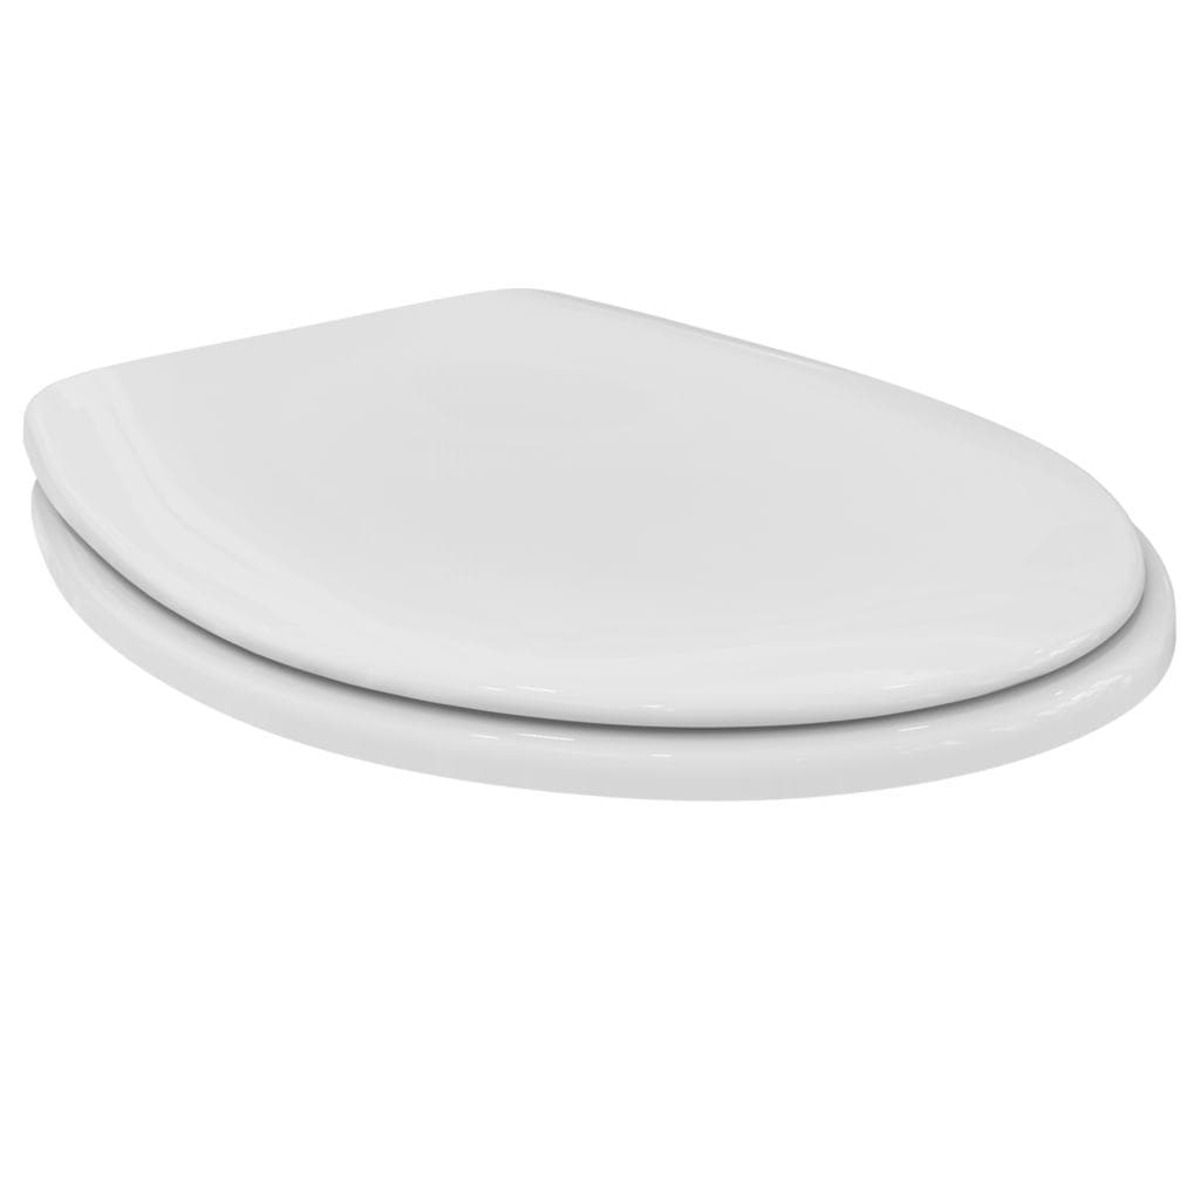 Wc prkénko Ideal Standard SanRemo (stacionární WC) duroplast bílá K705301 - Siko - koupelny - kuchyně